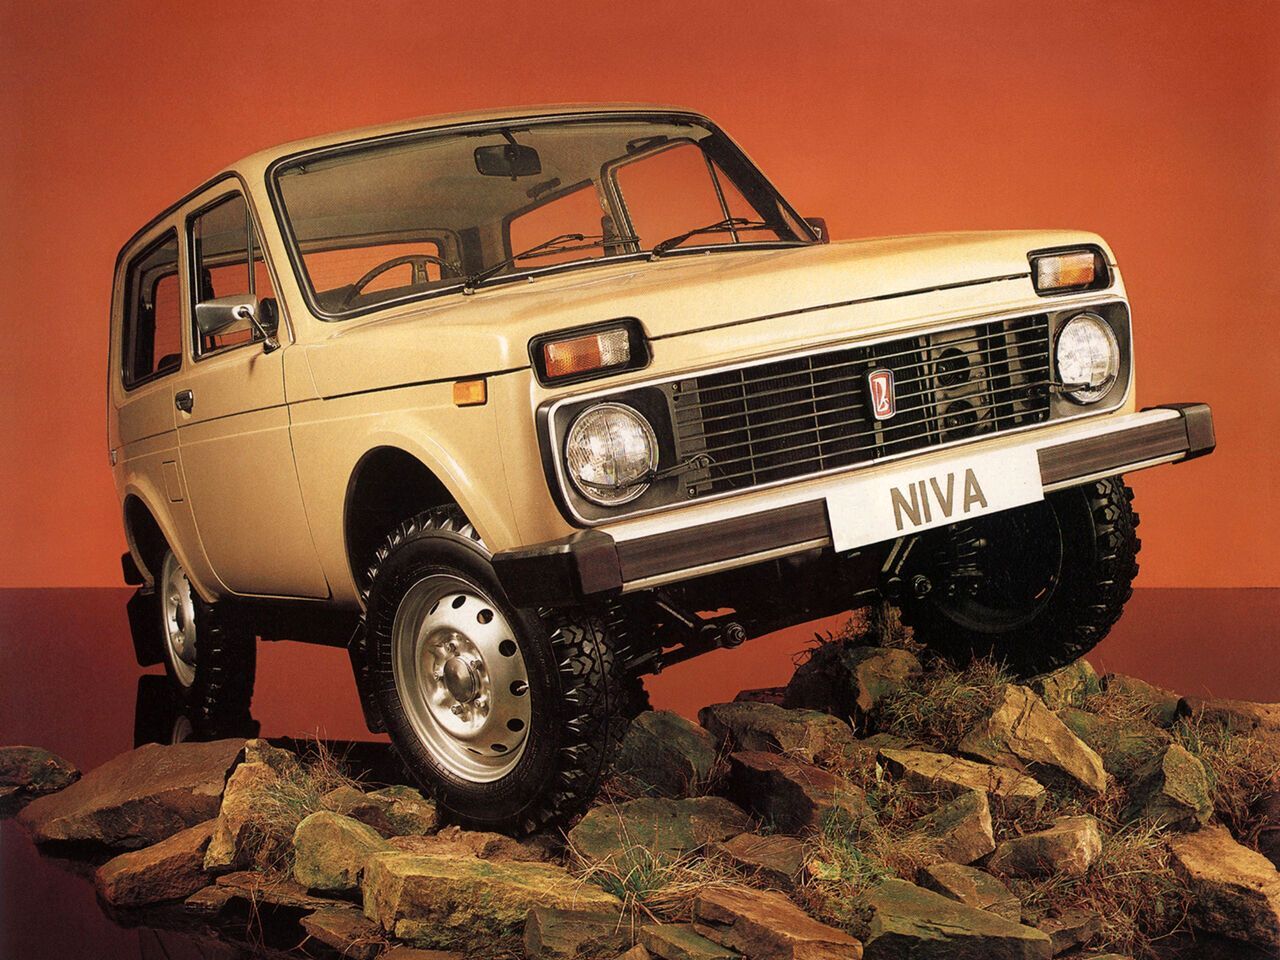 ВАЗ-21212 (Lada Niva 4x4) – экспортная праворульная модификация. Производилась ограниченными партиями, прежде всего, для английского рынка. Также поставлялась в Австралию, Новую Зеландию, Мозамбик и Ямайку